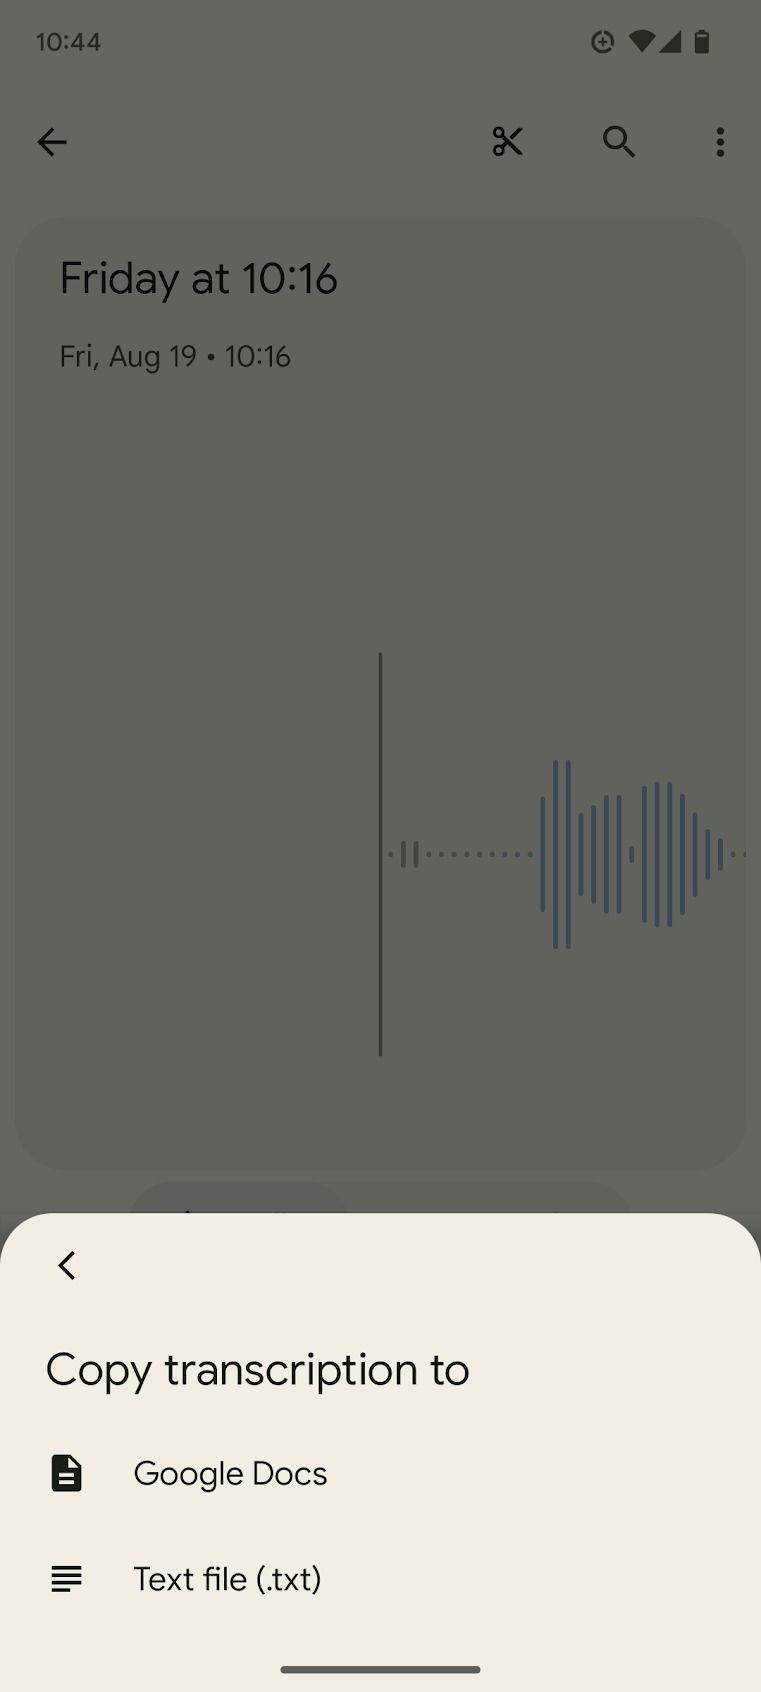 recorder app screenshot of transcription copy options